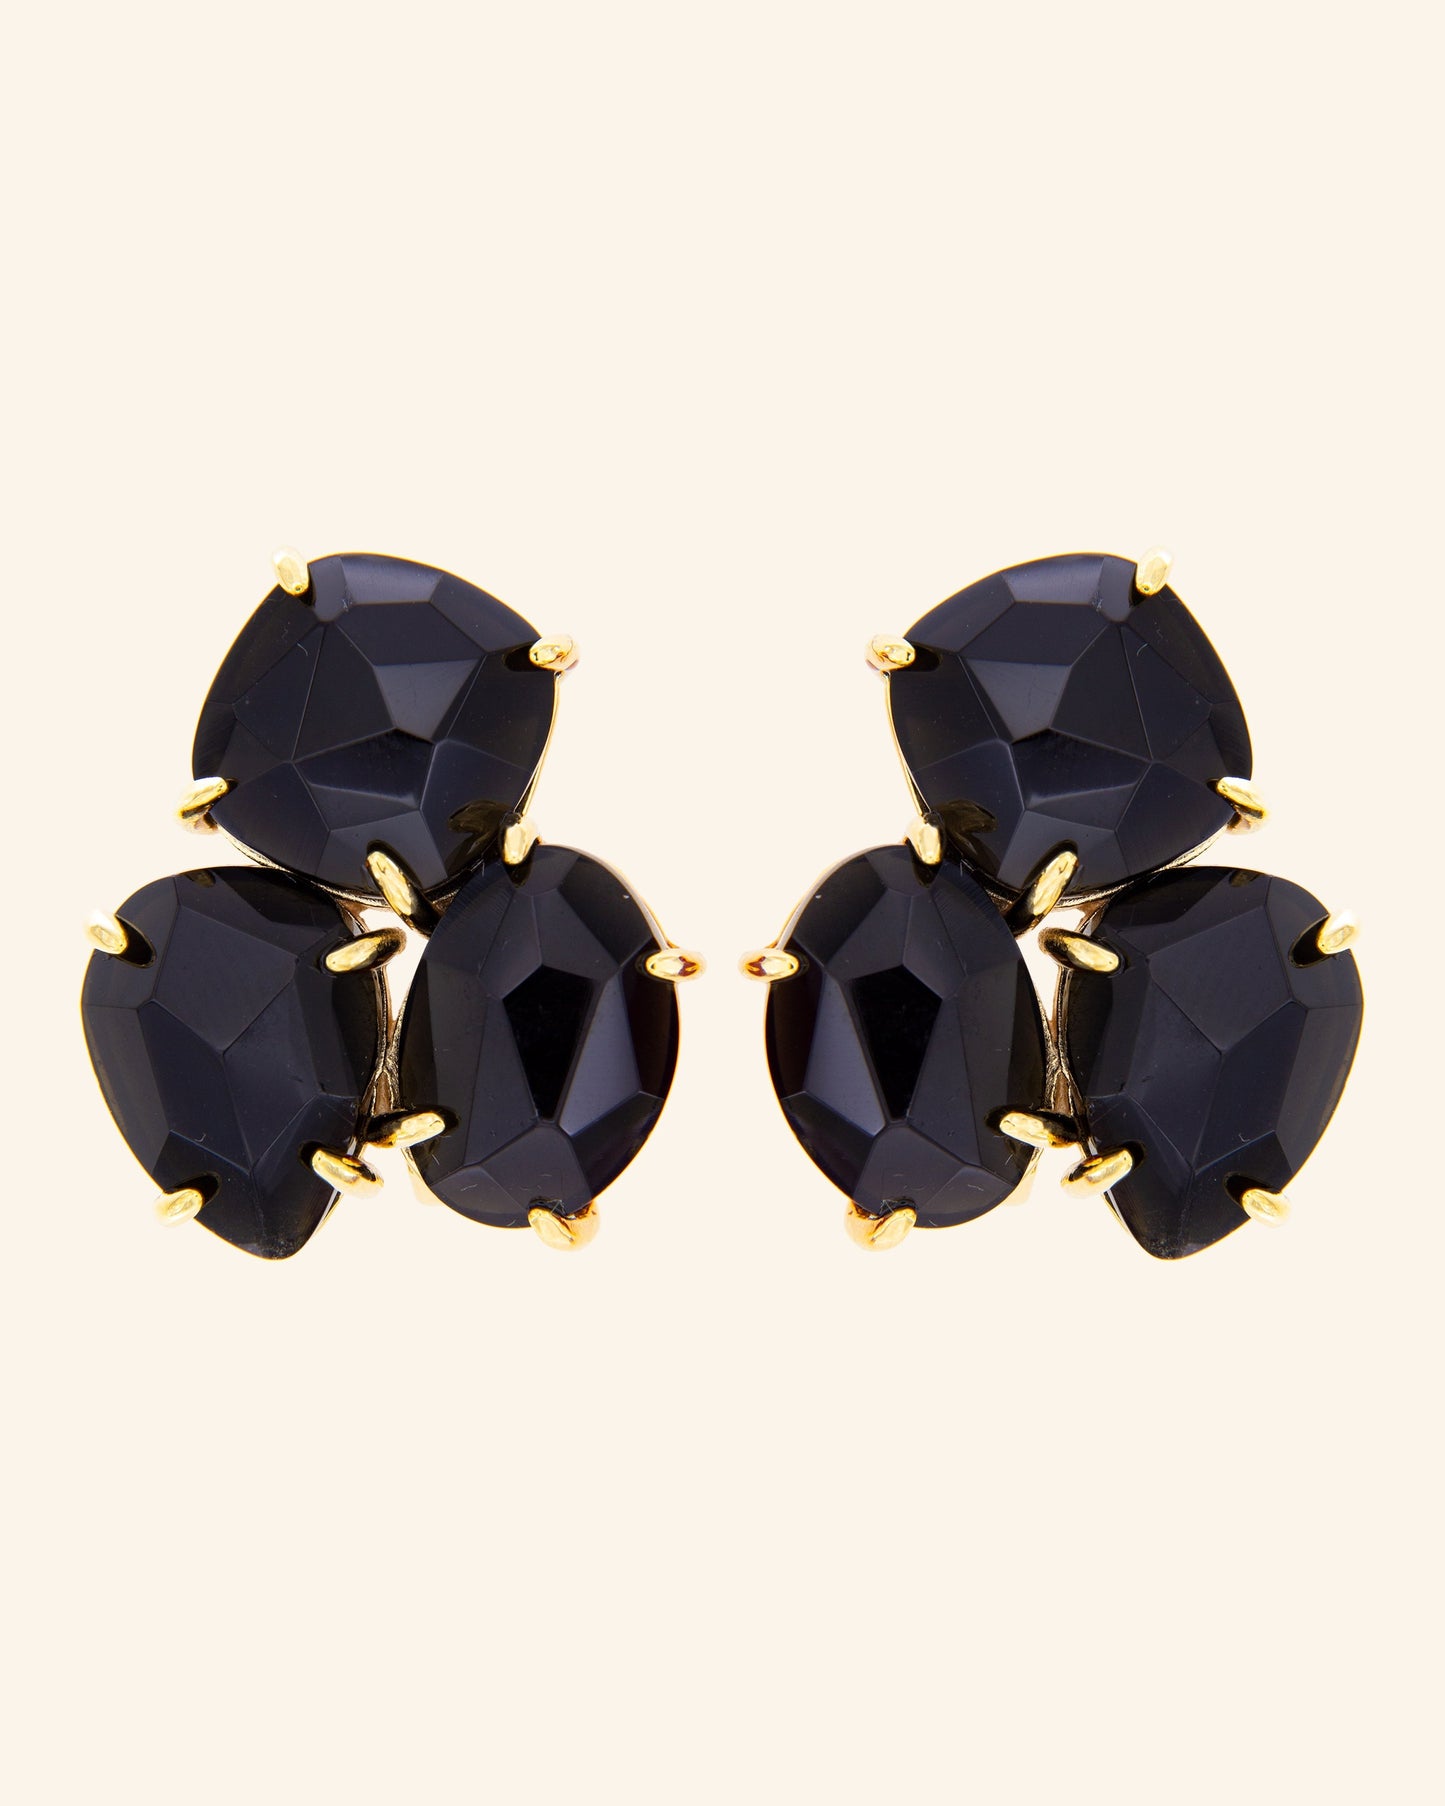 Kraz earrings with onyx Omega closure